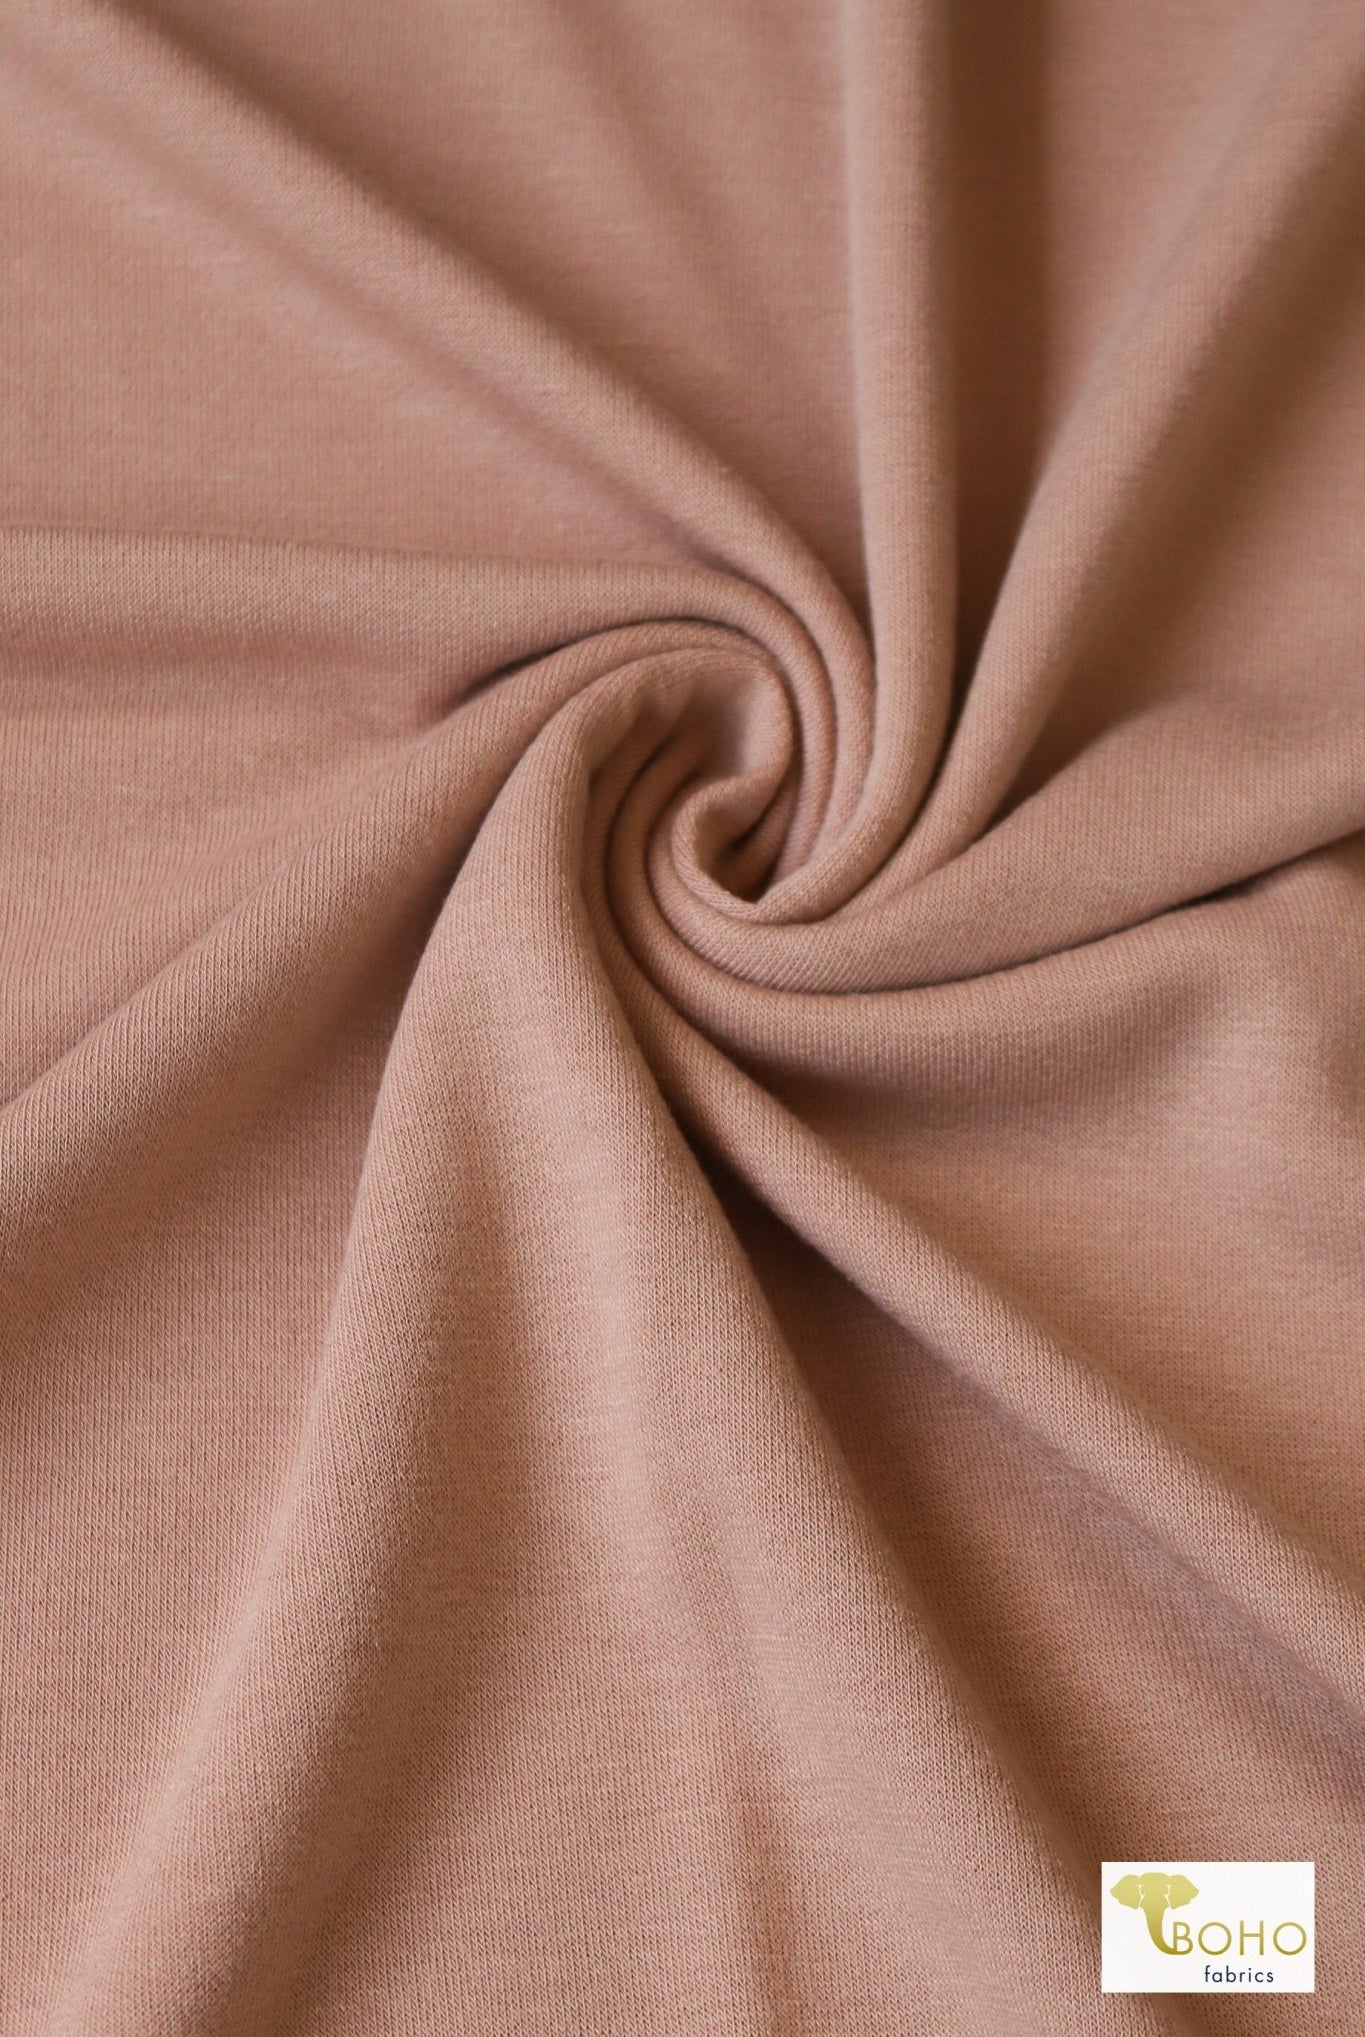 Dusty Peach French Terry Knit - Boho Fabrics